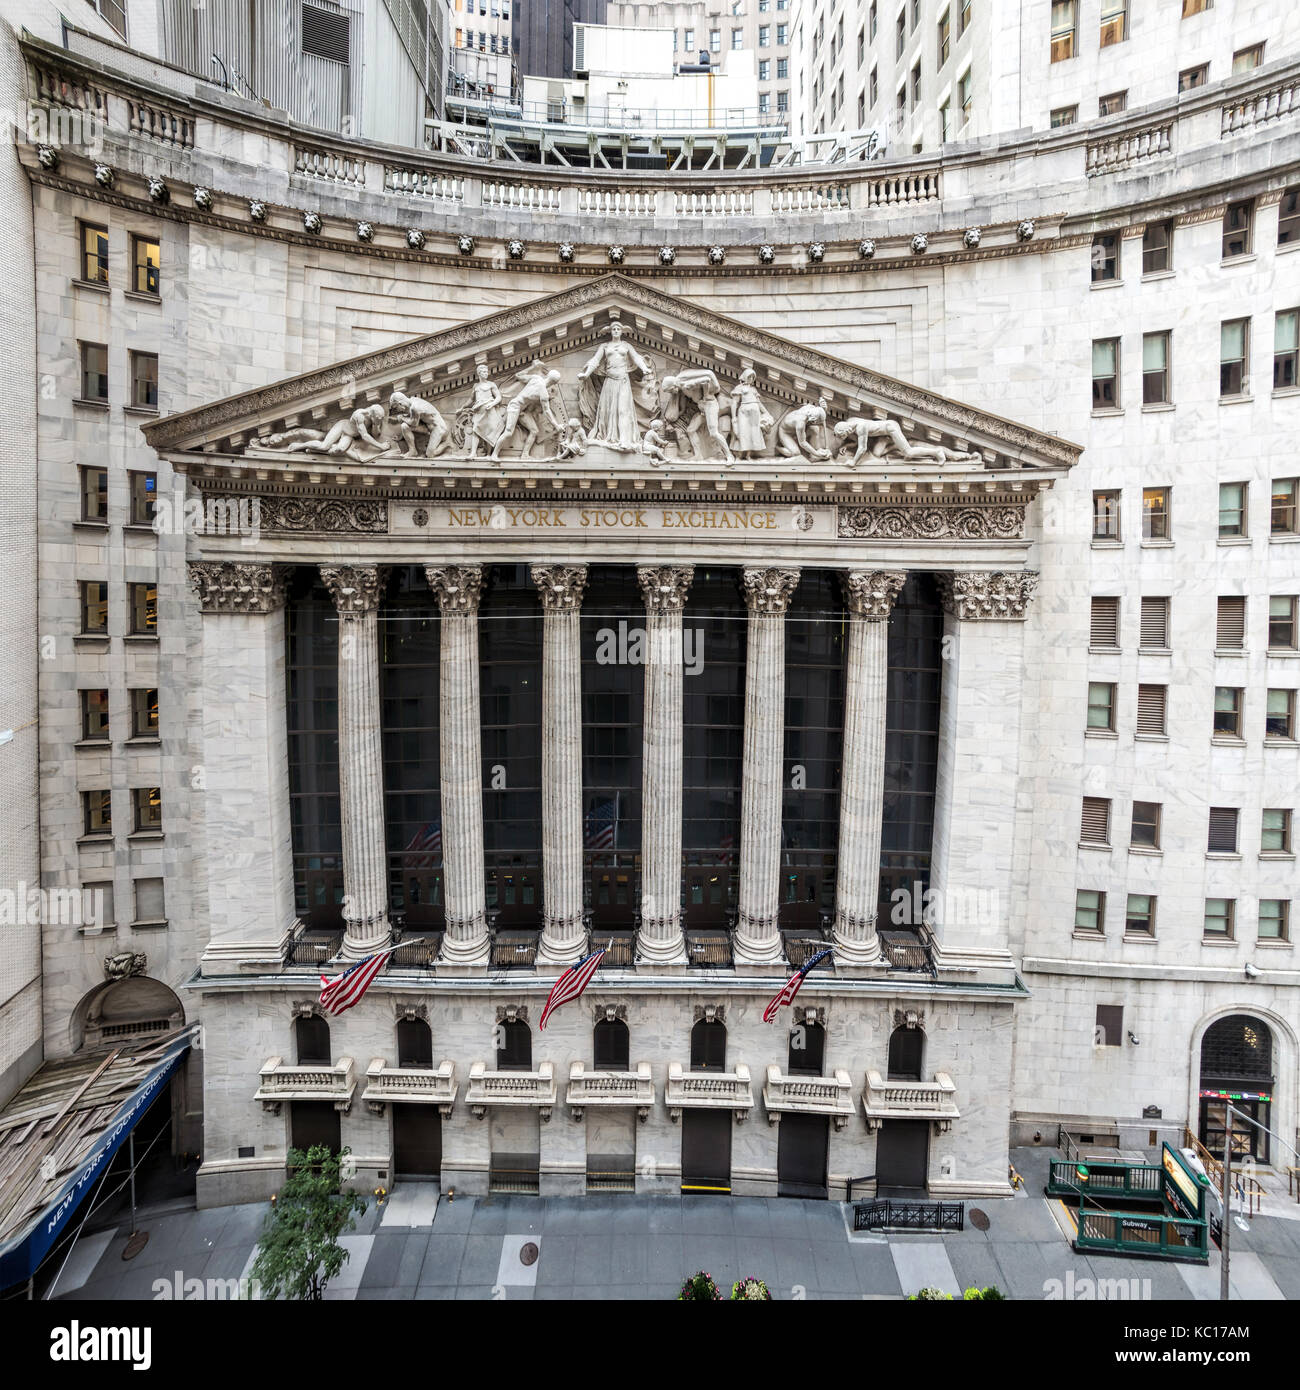 La facciata in pietra calcarea della famosa in tutto il mondo new york stock exchange building a Wall Street. scolpita da John Quincy Adams Ward nel 1904. Foto Stock